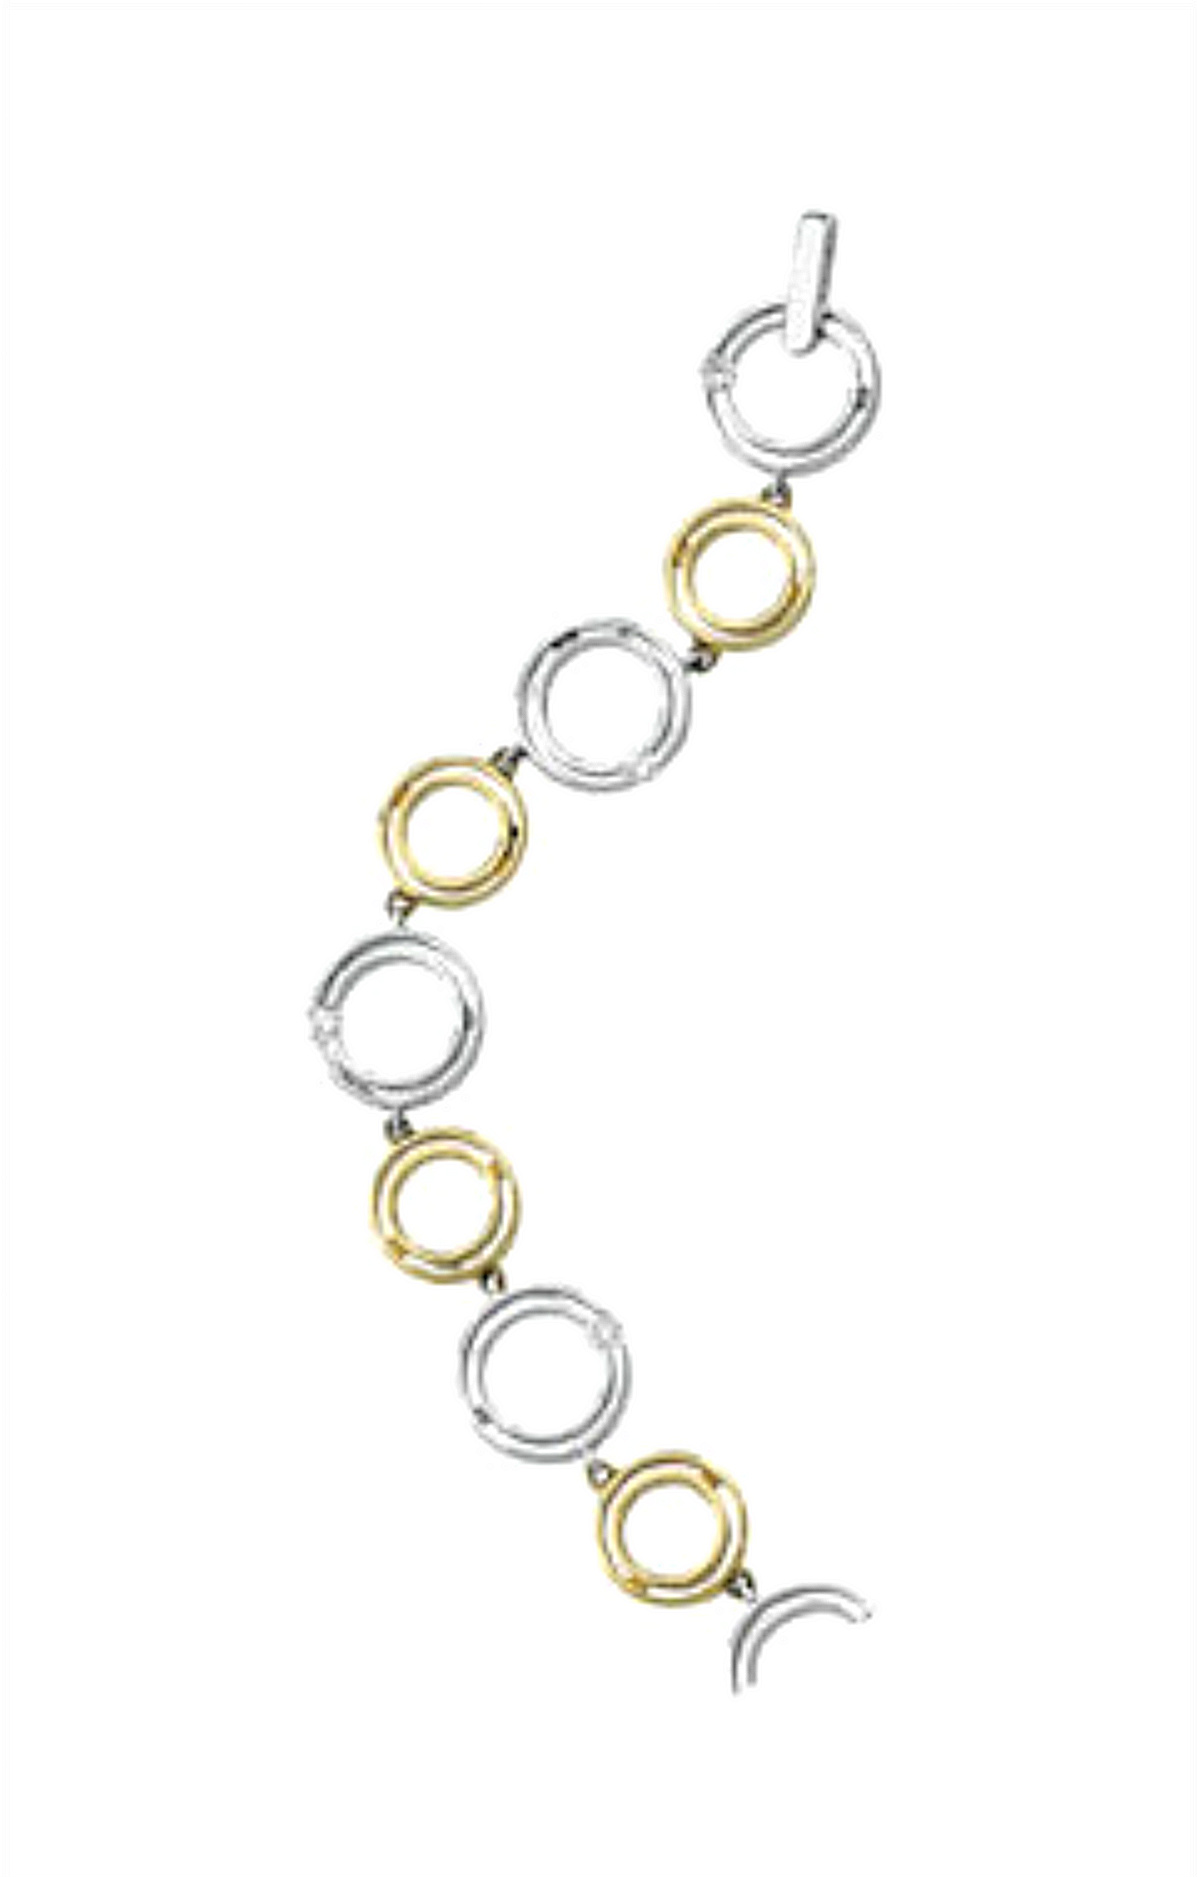 Two-Tone 1/3 CTW Diamond Bracelet, 14k White and Yellow Gold, 8.25"